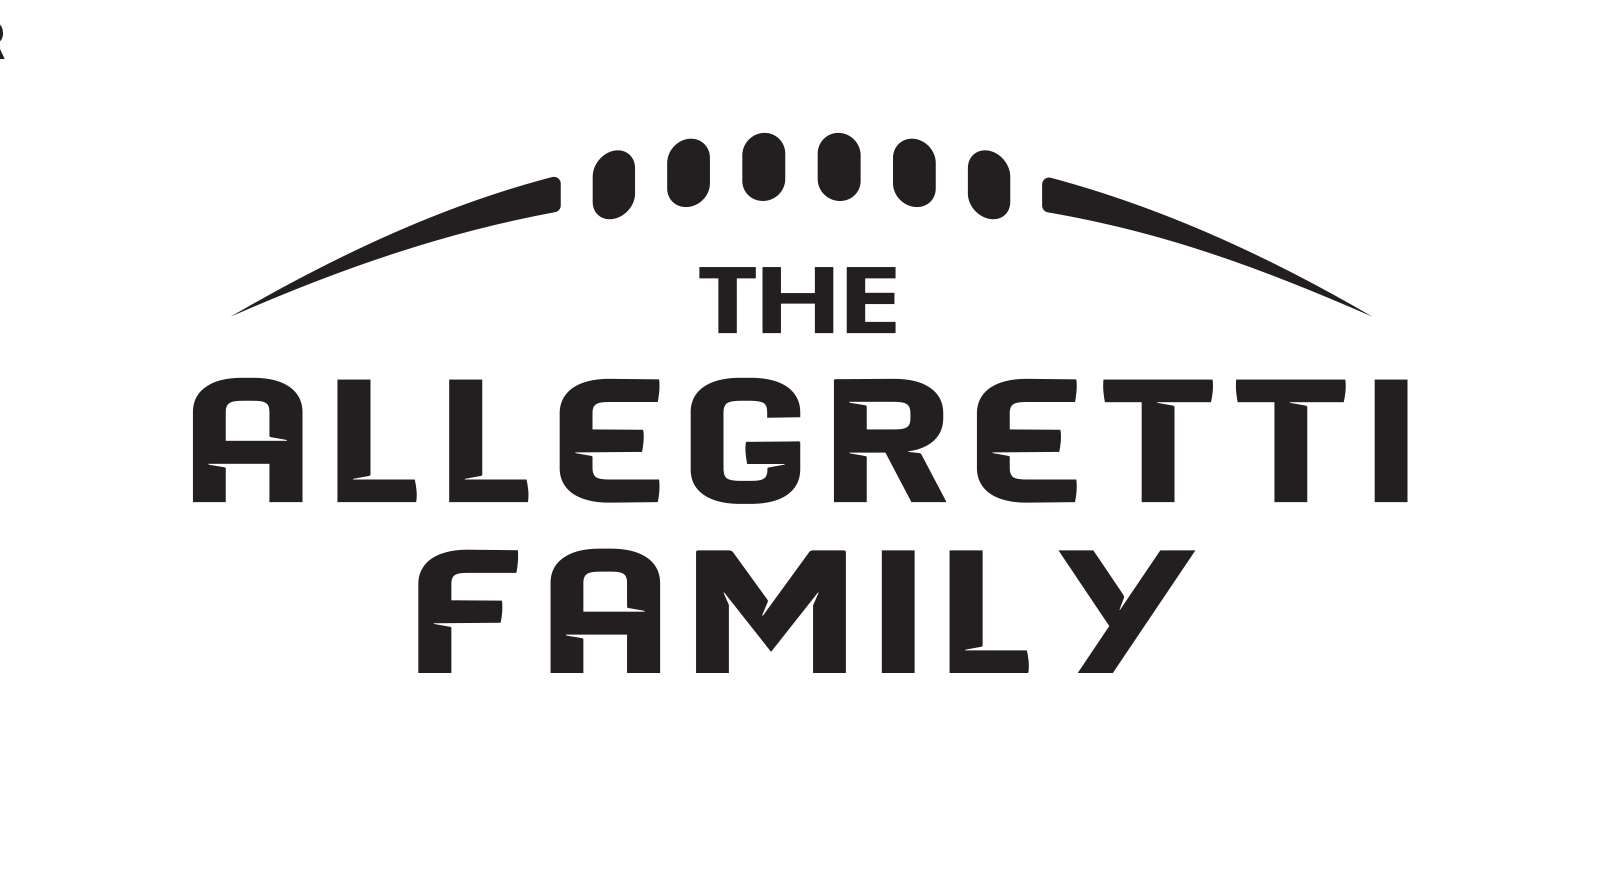 The Allegretti